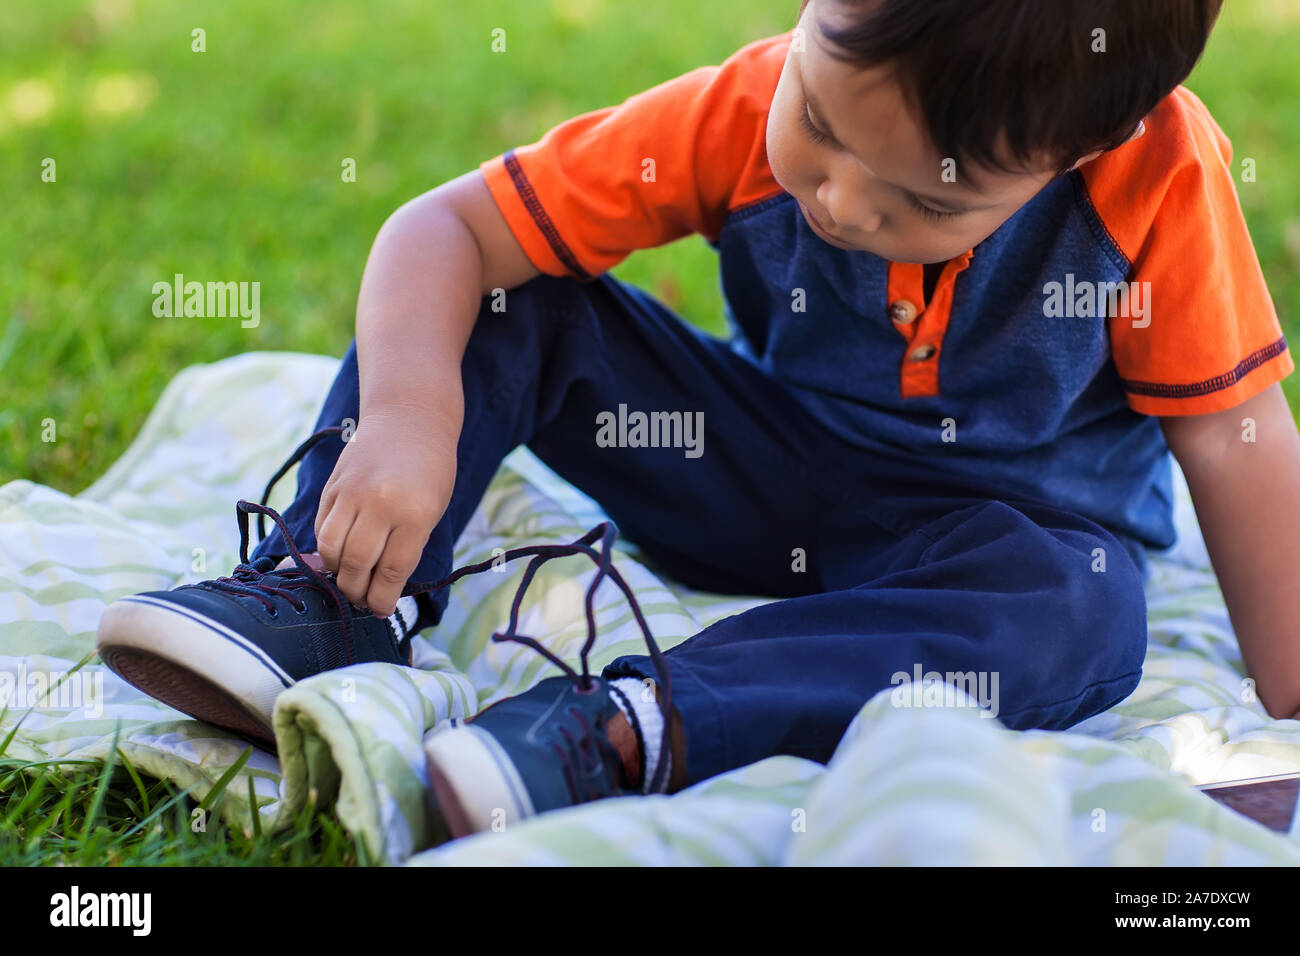 Eine nette junge lernen seinen Schuh zu binden, Schnürsenkel, und entspannen Sie in einem grünen Rasen. Stockfoto